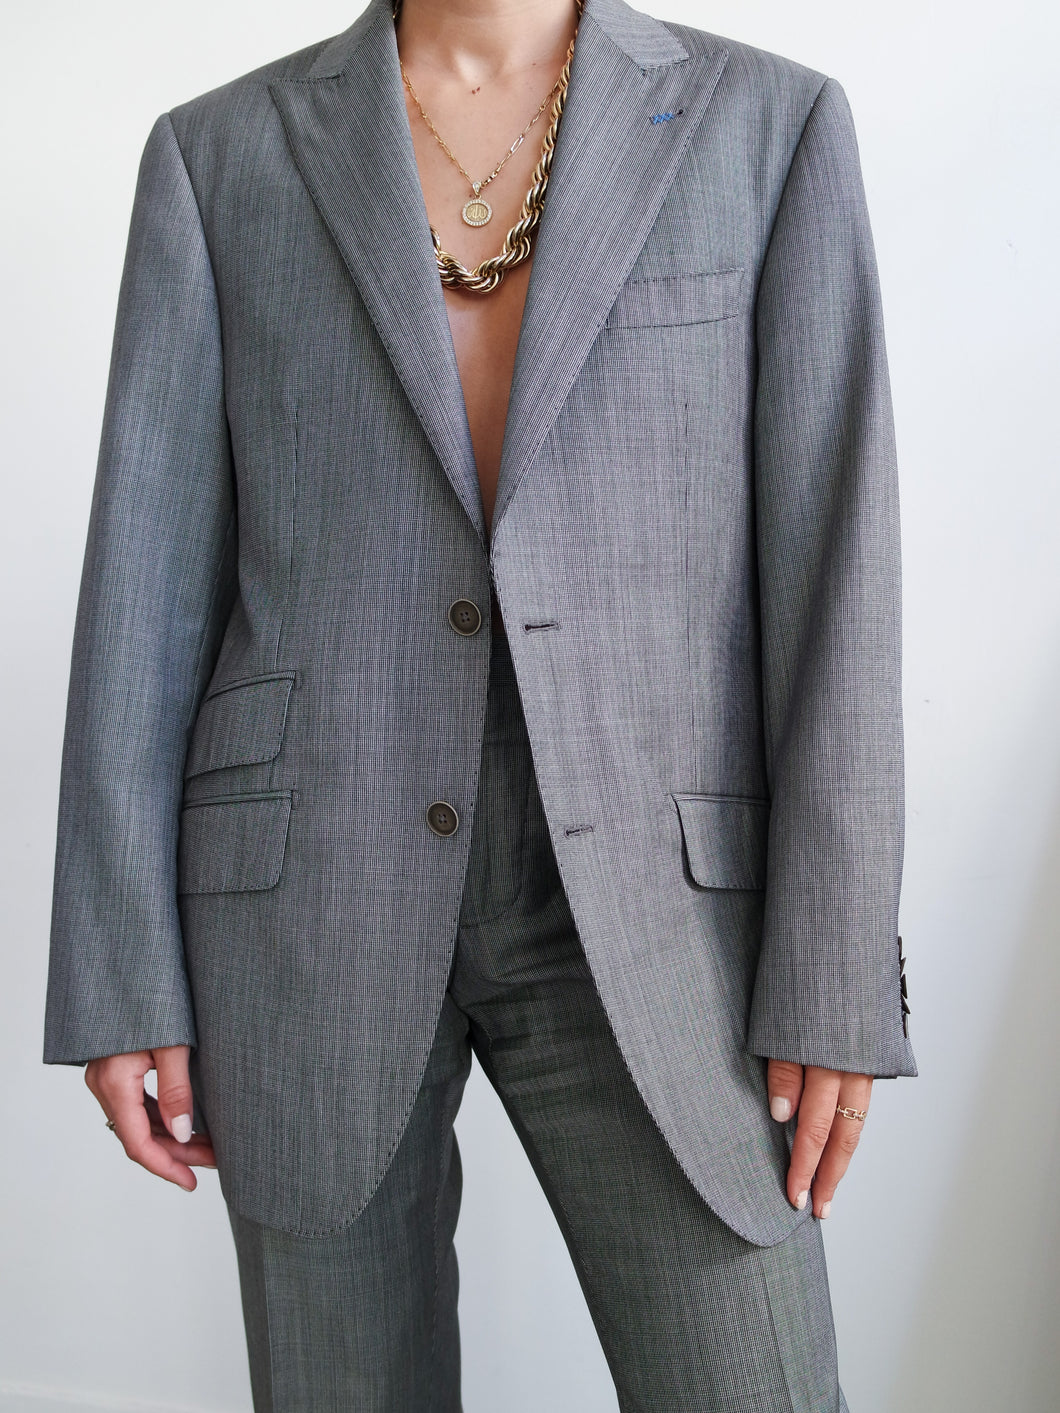 VAN GILS Two pieces grey suits